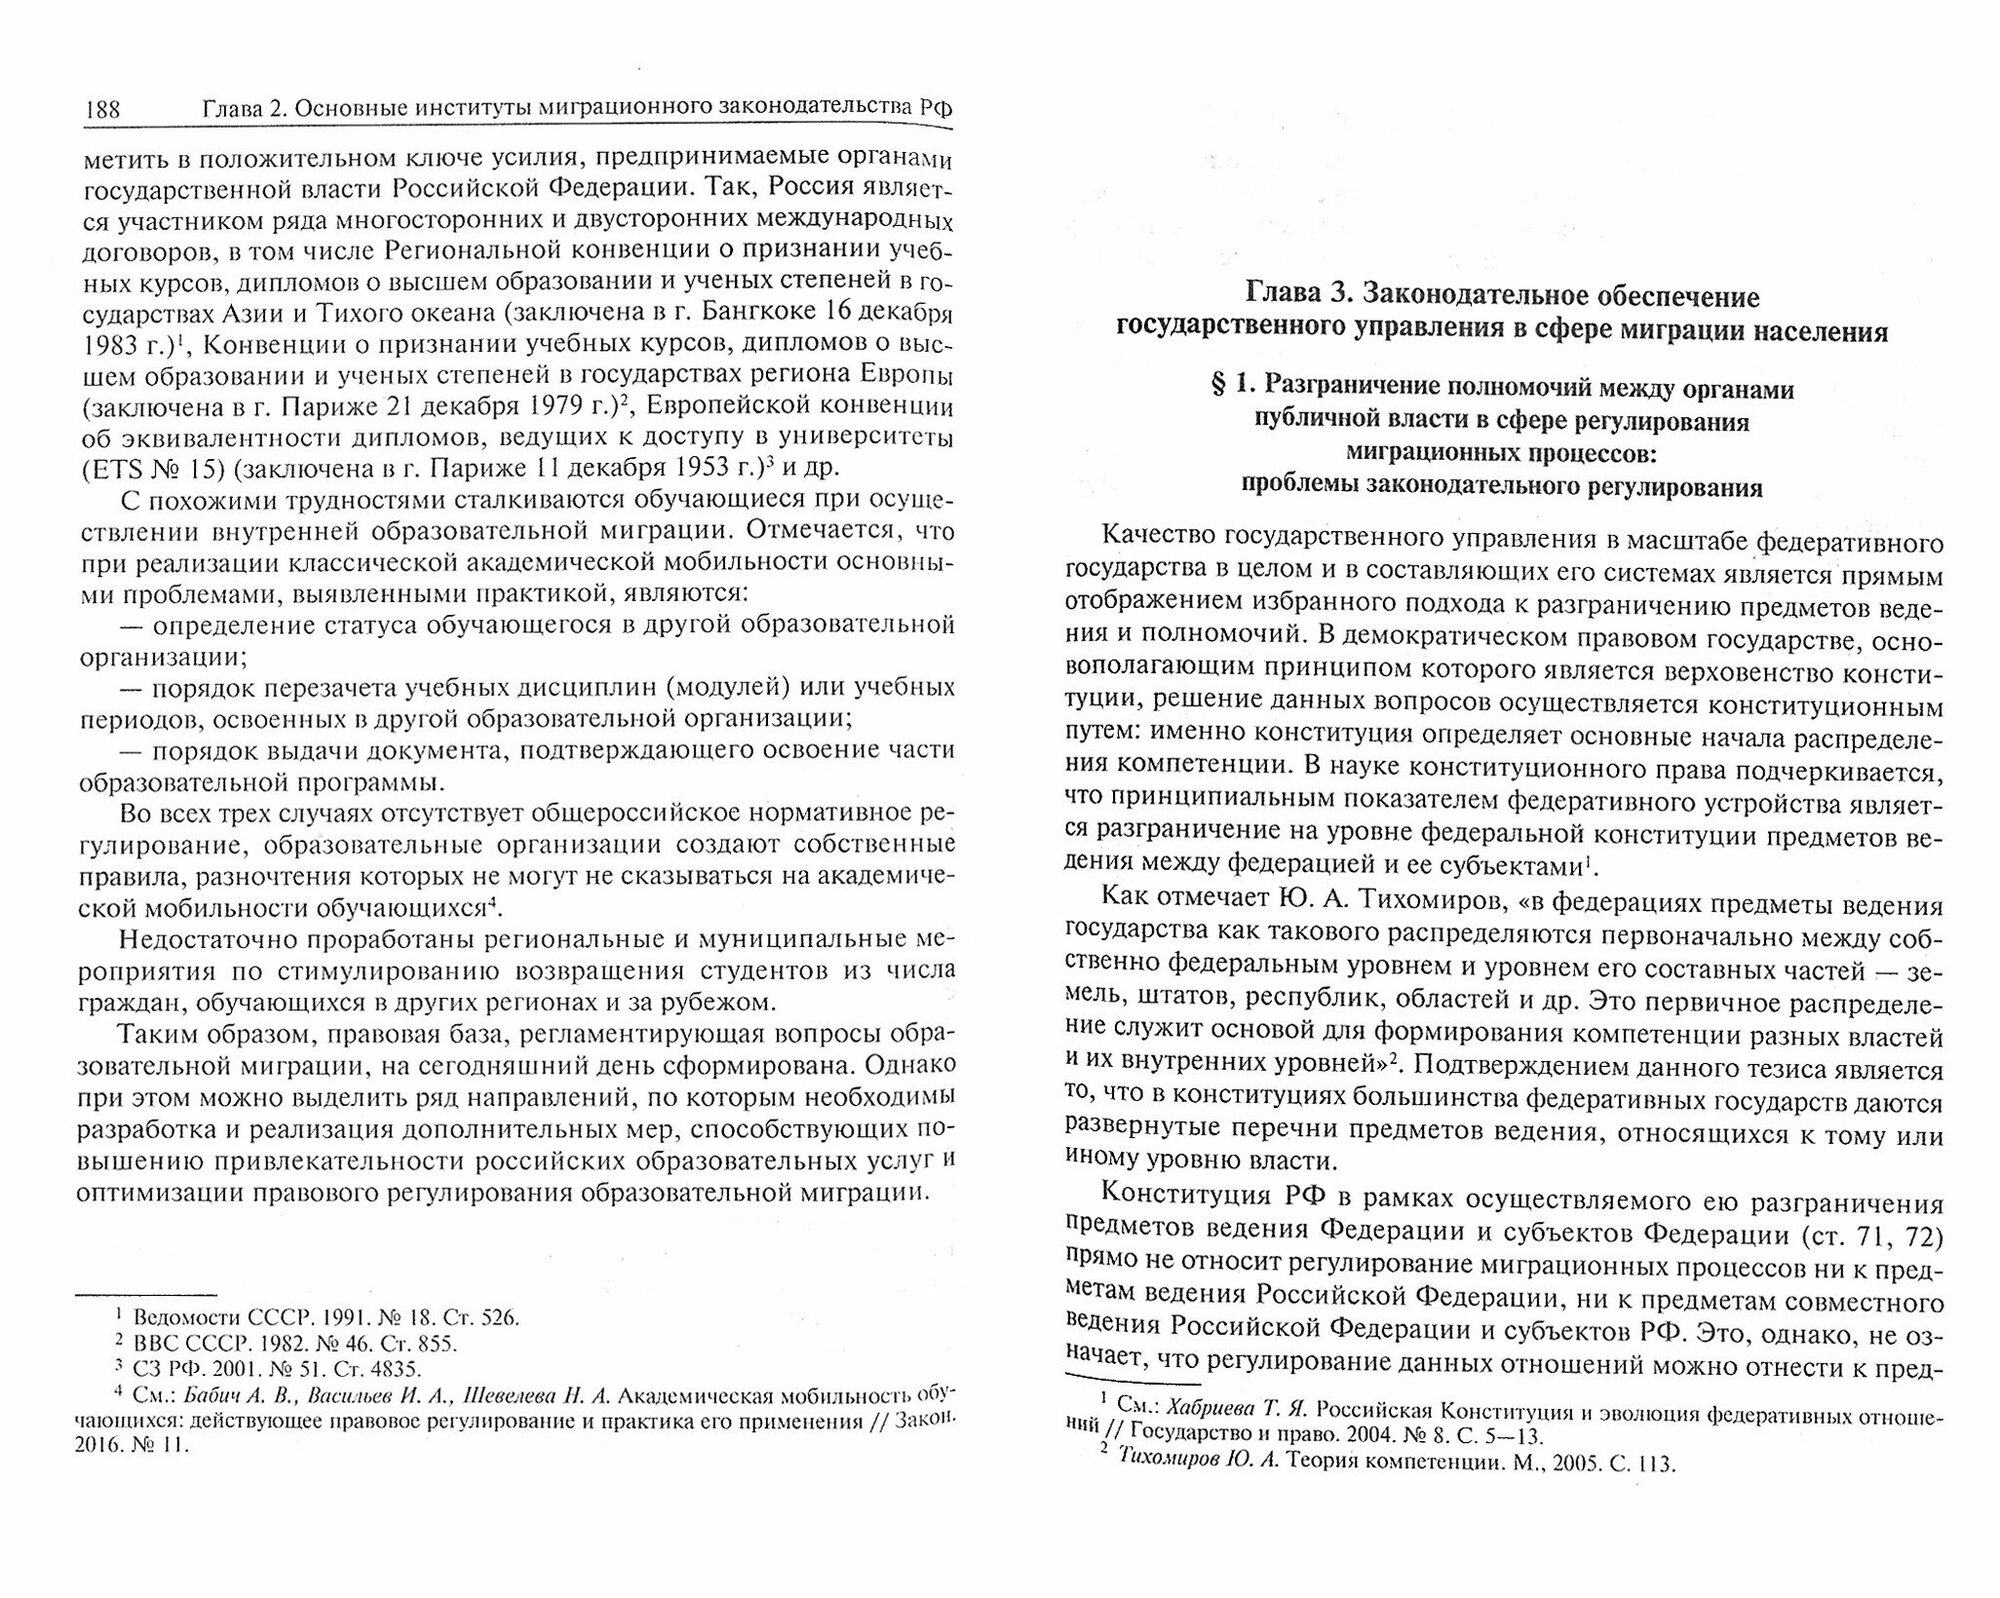 Миграционное законодательство Российской Федерации: тенденции развития и практика применения - фото №3